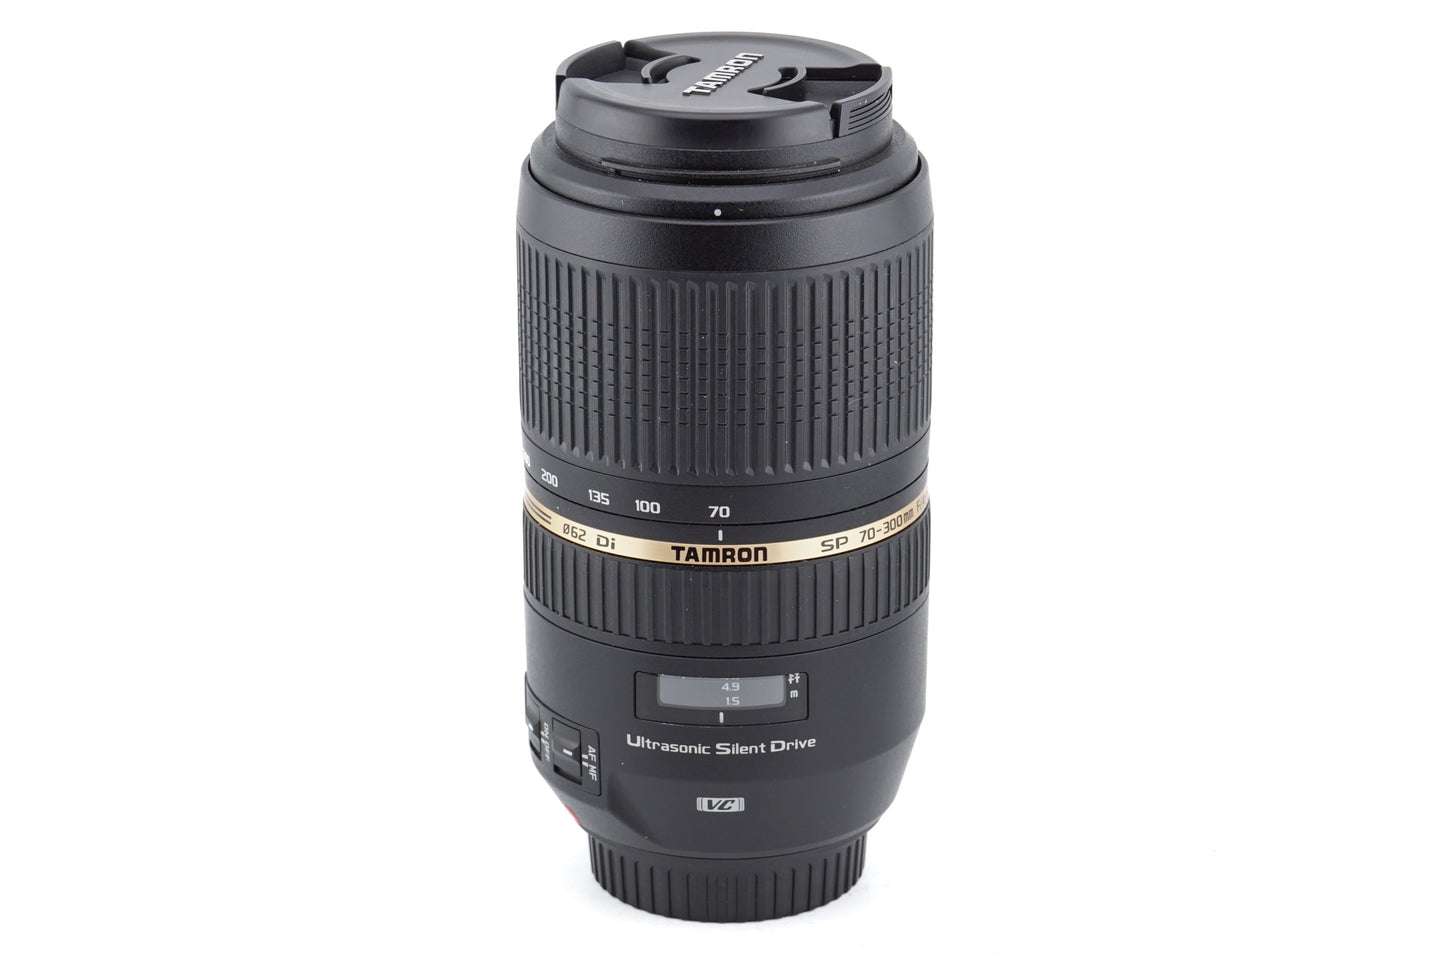 Tamron 70-300mm f4-5.6 SP DI VC USD (A005) - Lens